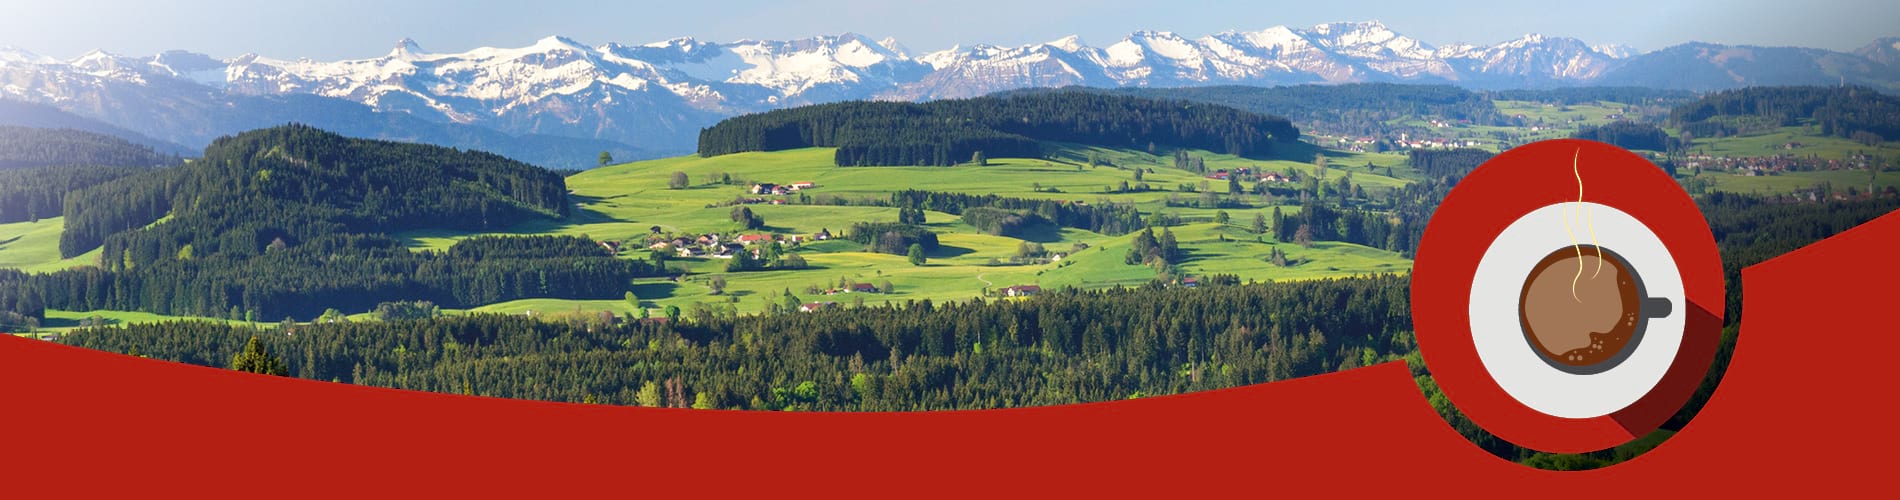 Das Bild zeigt die schöne Landschaft von Oberschwaben. Eine gezeichnete Kaffeetasse assoziiert das Thema "Newsletter am Morgen" der Schwäbischen Zeitung.